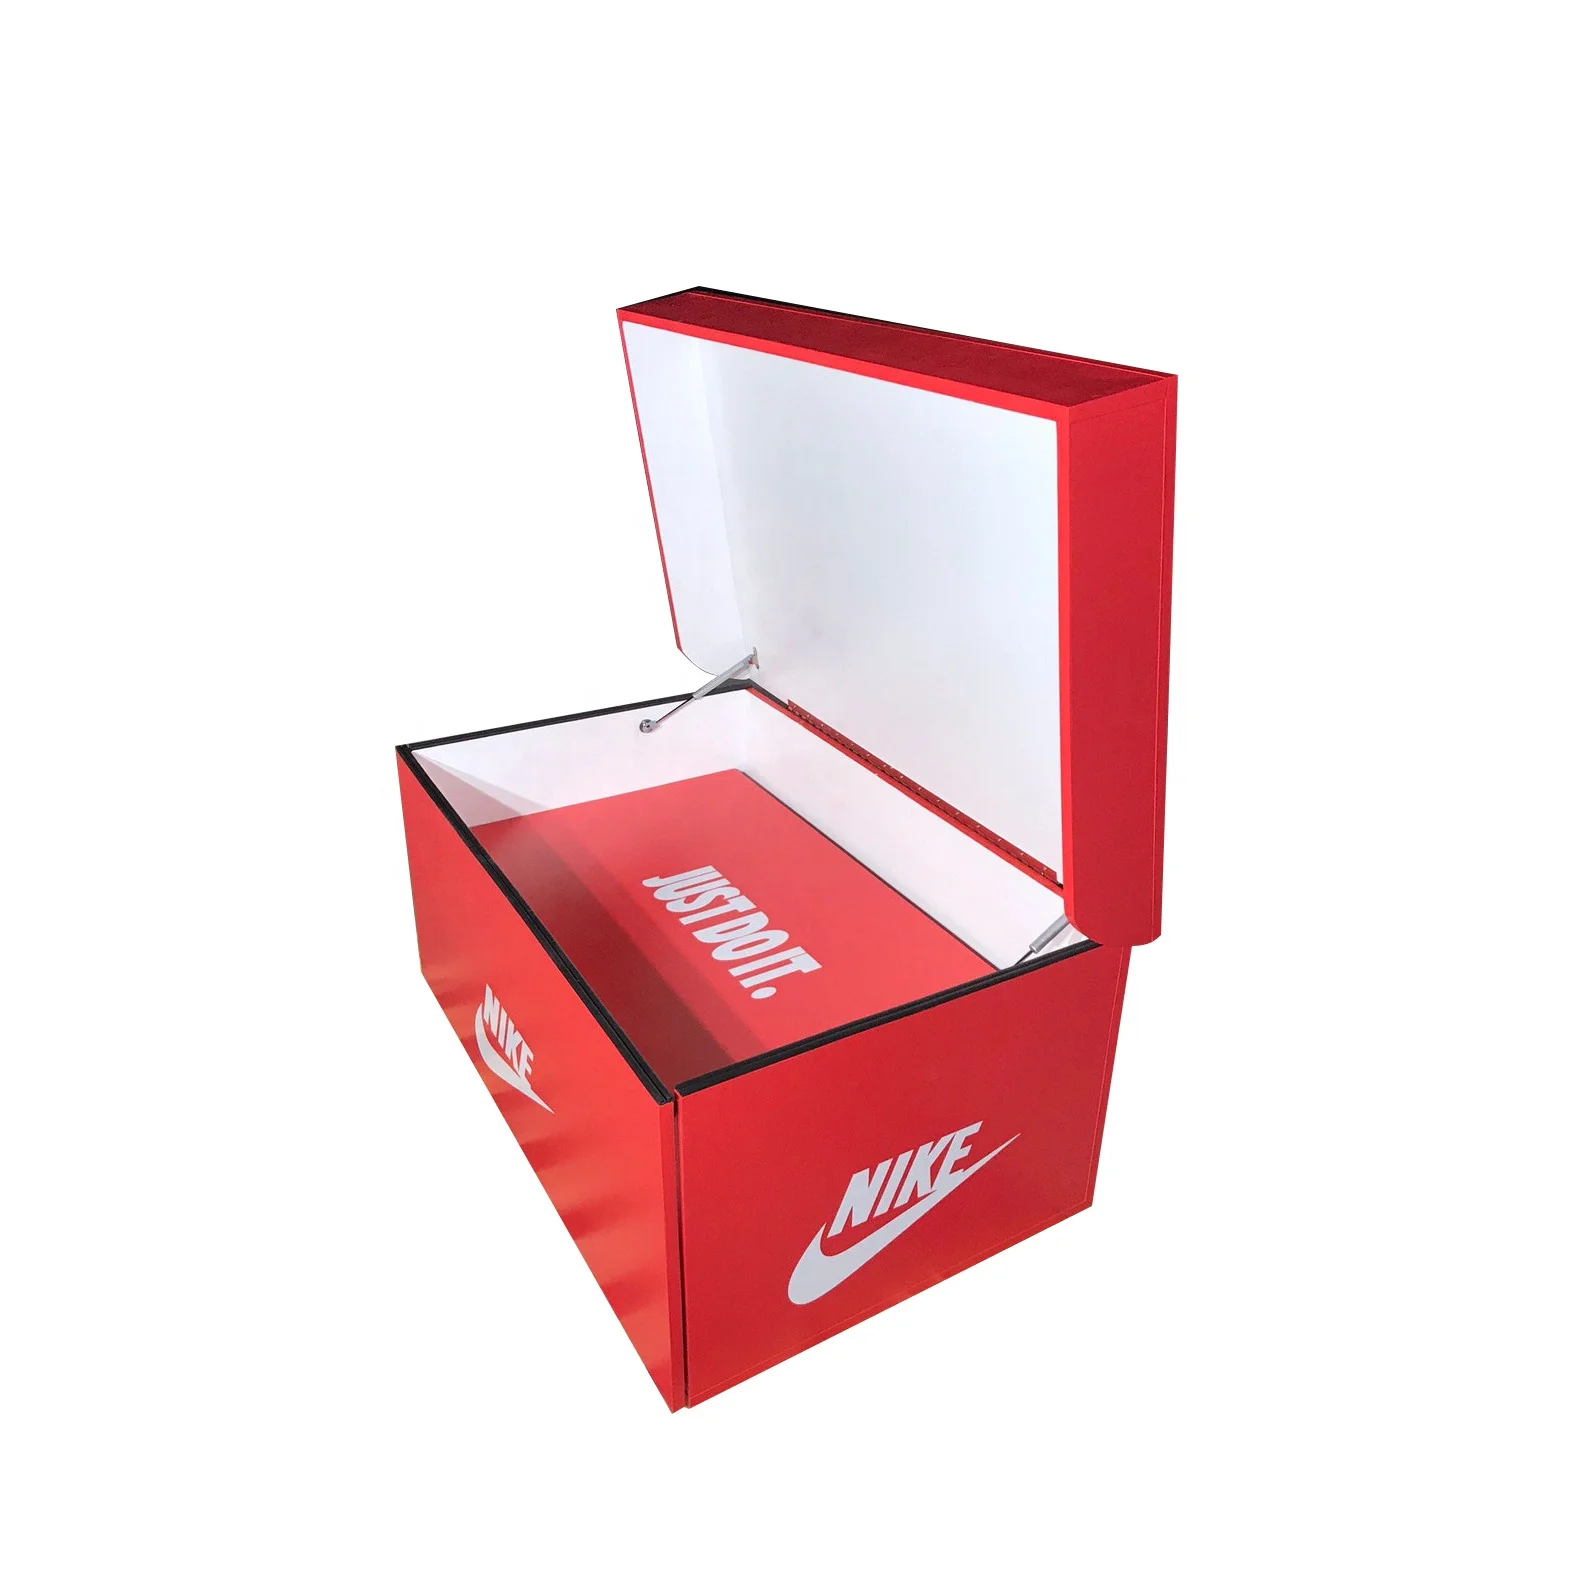 Louis Vuitton Shoe box 📦 - Giant shoe storage box _egypt